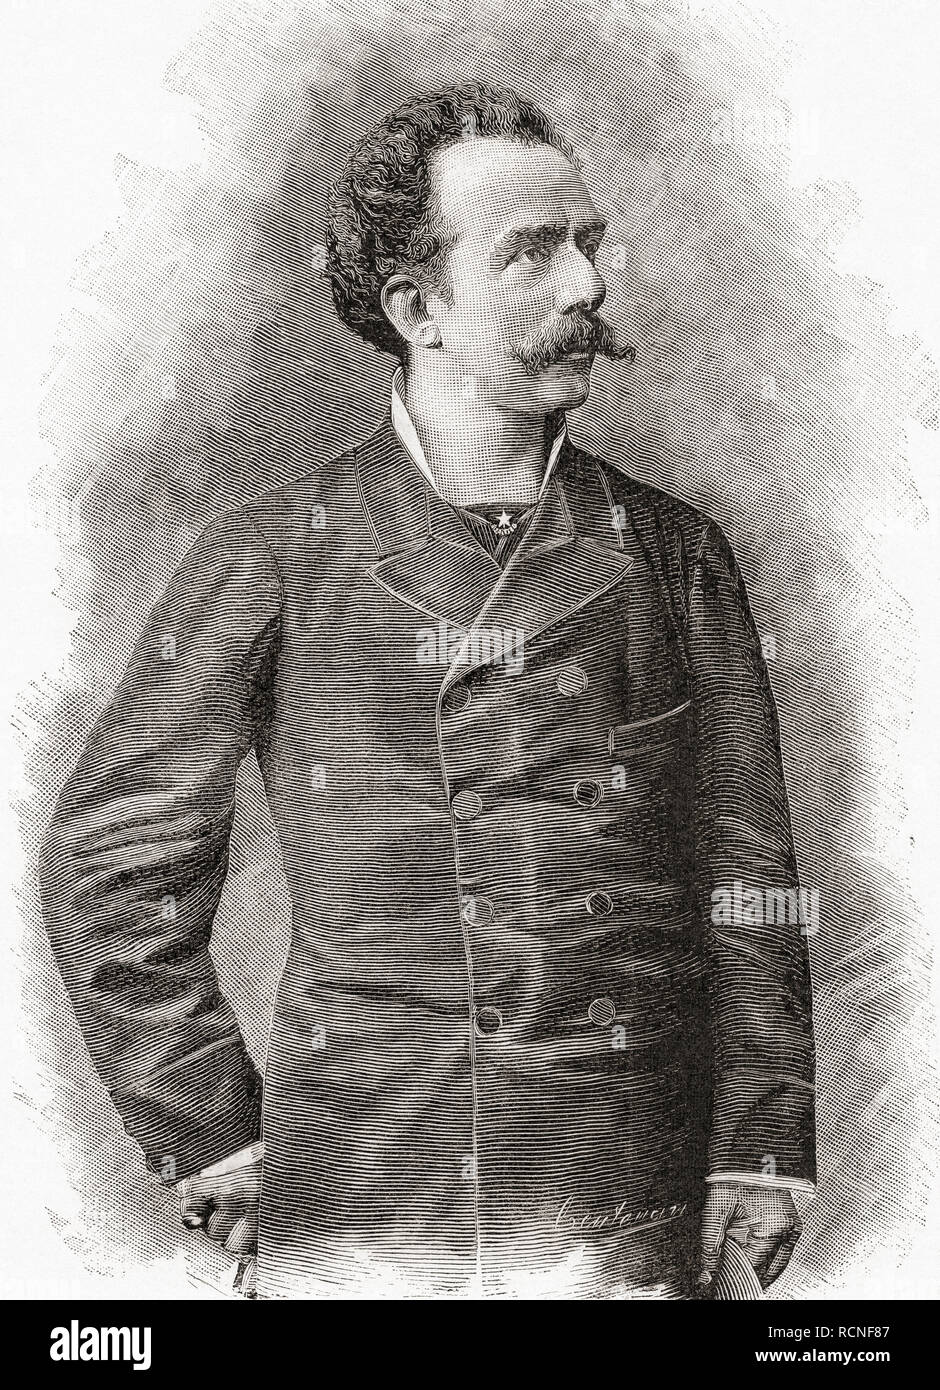 Francesco (Franco) Antonio Faccio, 1840 - 1891. Compositor y director de orquesta italiano. Desde la Ilustracion artistica, publicado el 1887. Foto de stock